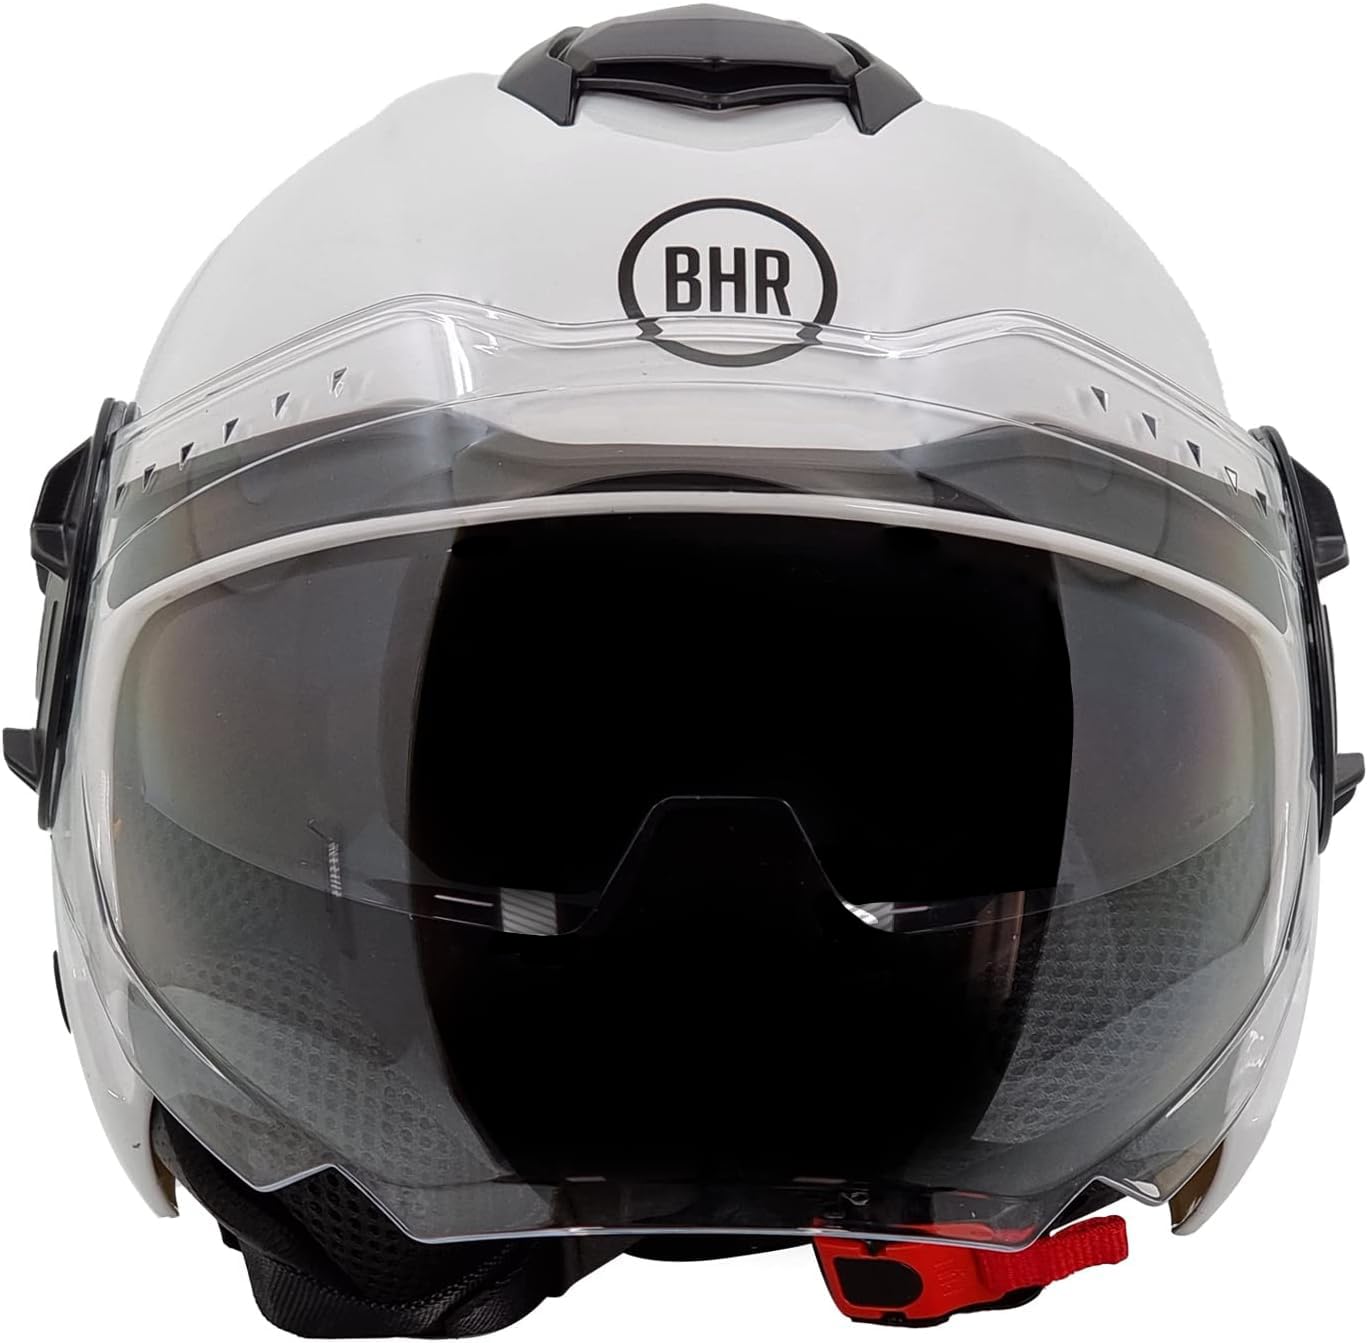 BHR Jet Helm Double Visor 830 Flash, Scooter Helm mit ECE 22.06 Zulassung, Leichter & komfortabler Jet Helm mit innenliegender Sonnenblende, Weiß, XL